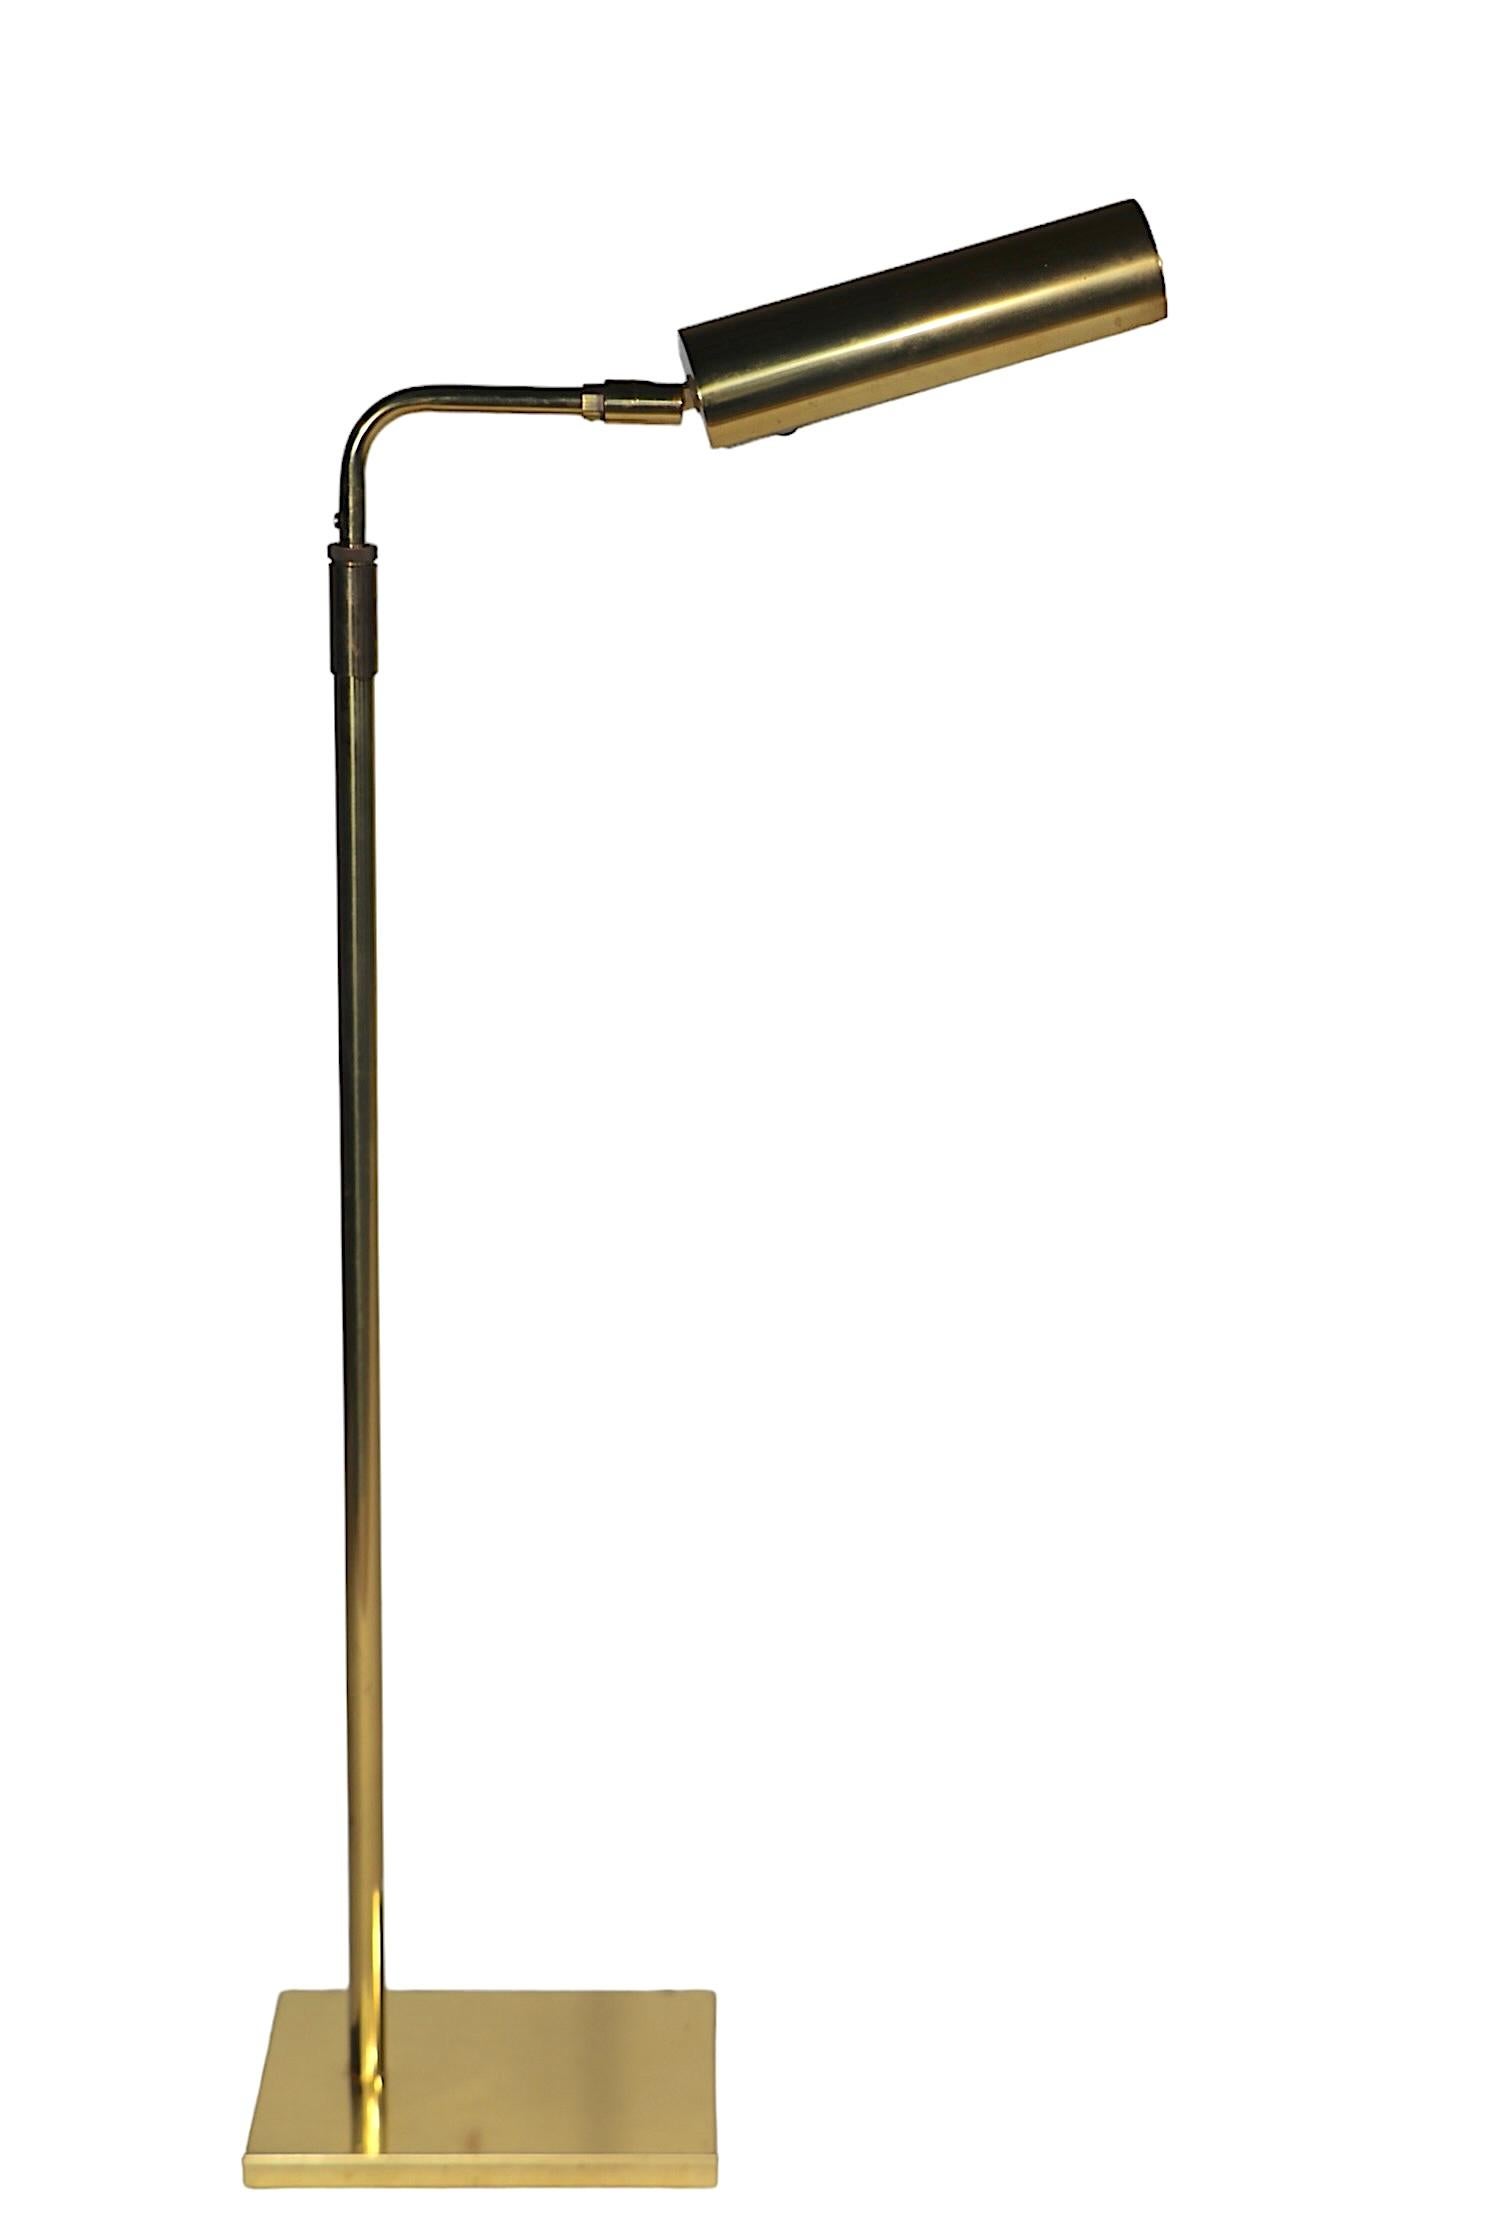  Koch & Lowy Pharmacy Floor Lamp in Brass c 1950/60's  For Sale 5